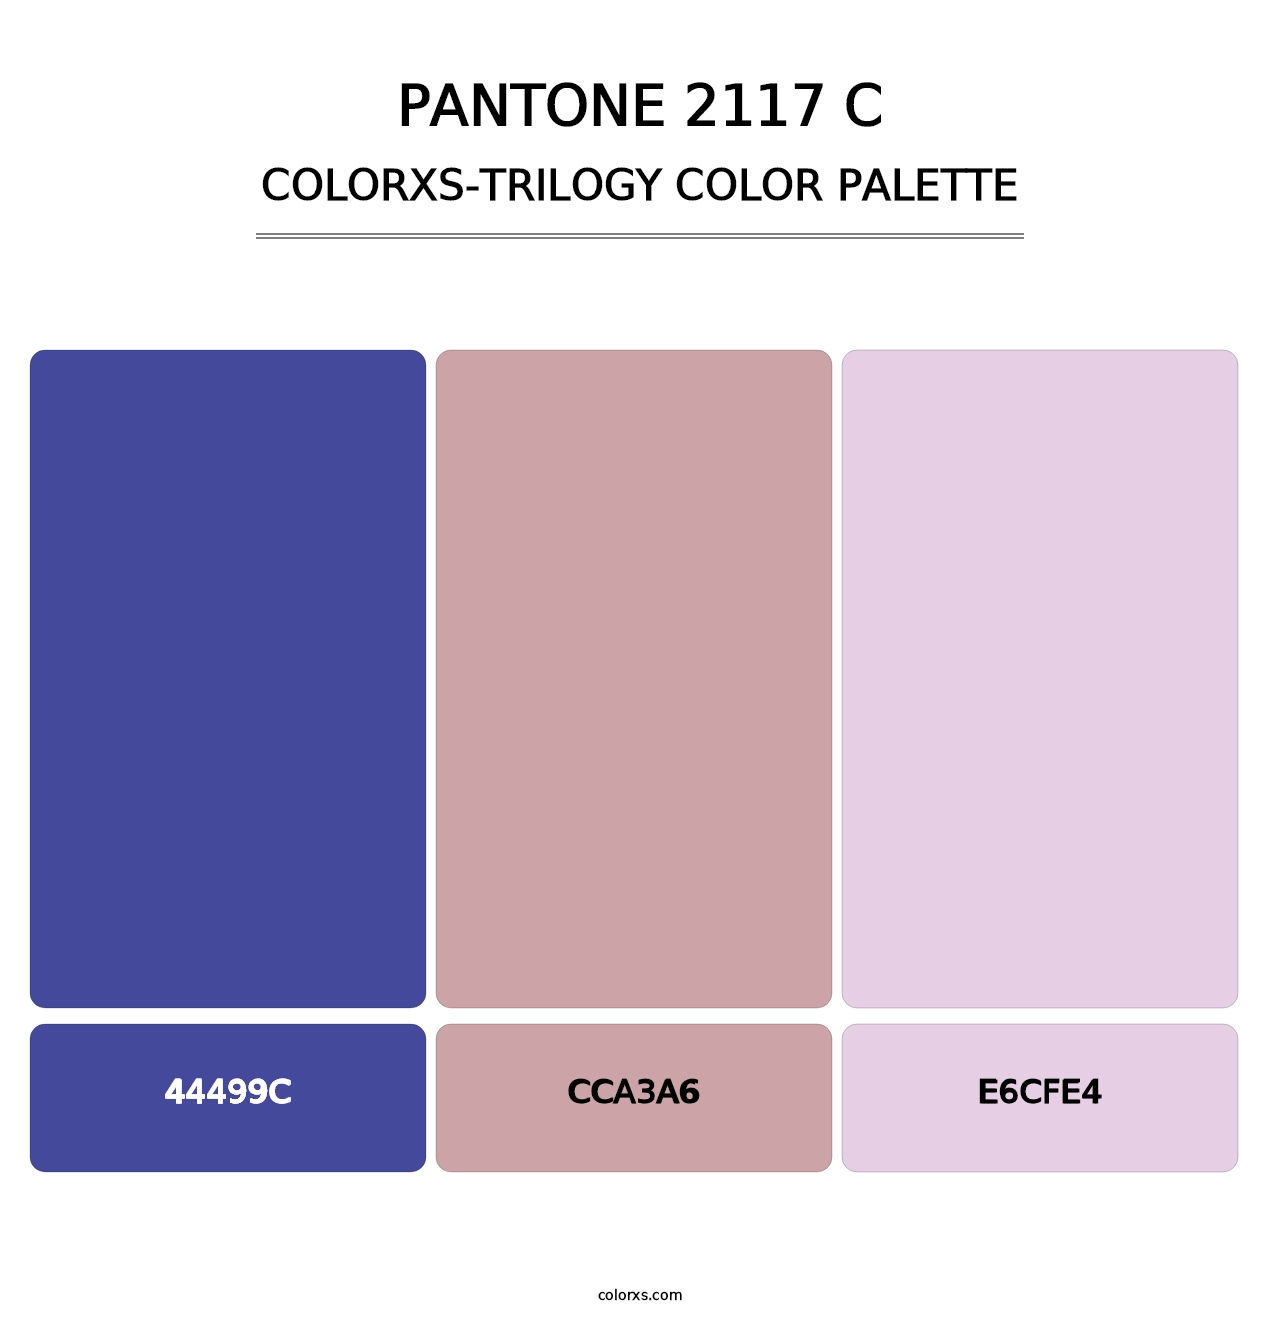 PANTONE 2117 C - Colorxs Trilogy Palette